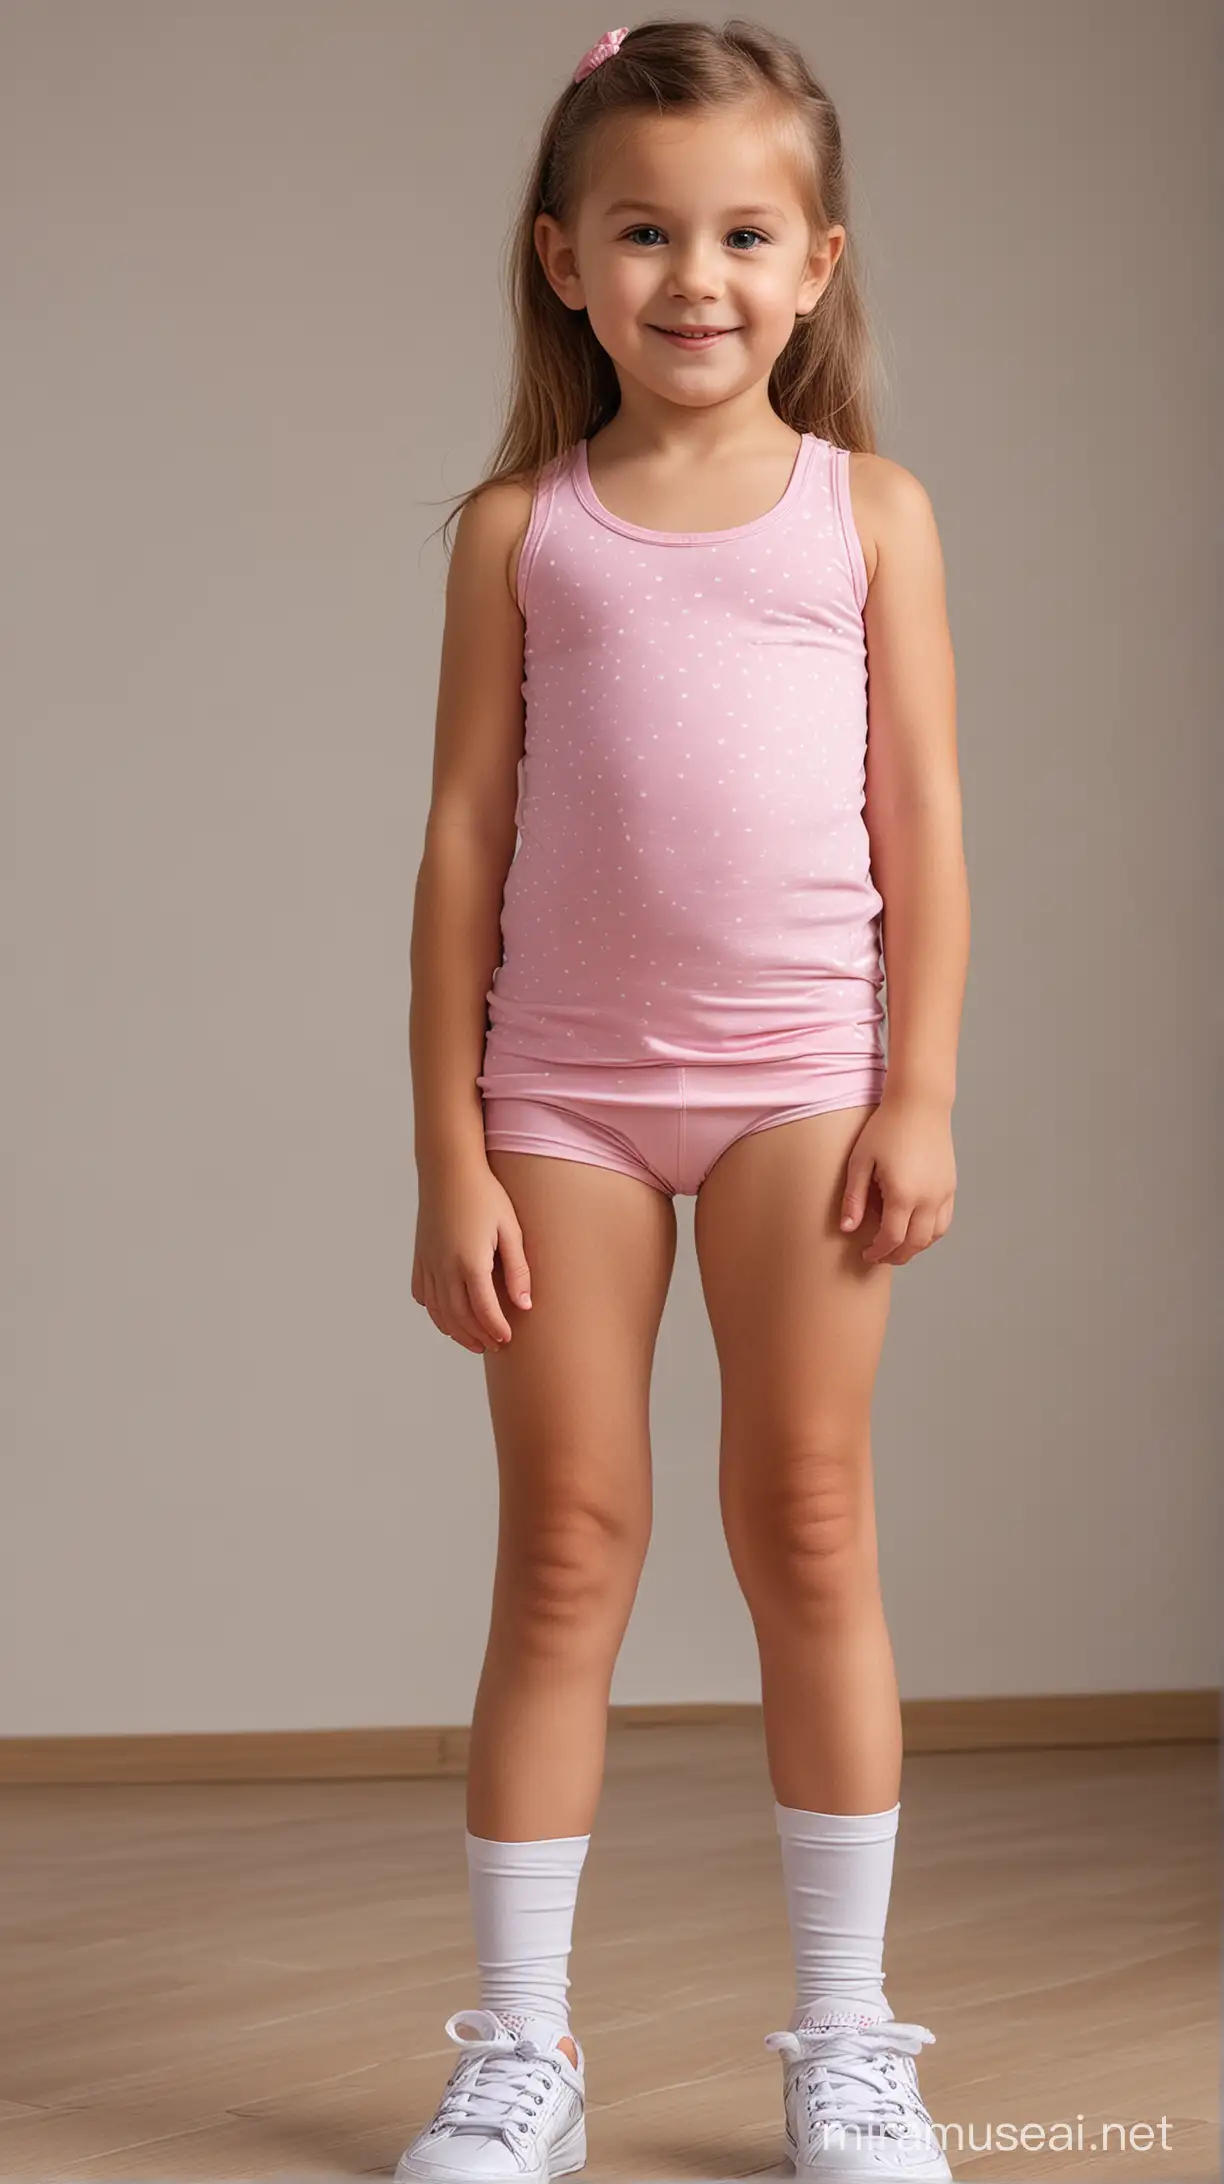 Adorable 6YearOld Girl in Stylish Legging Shorts